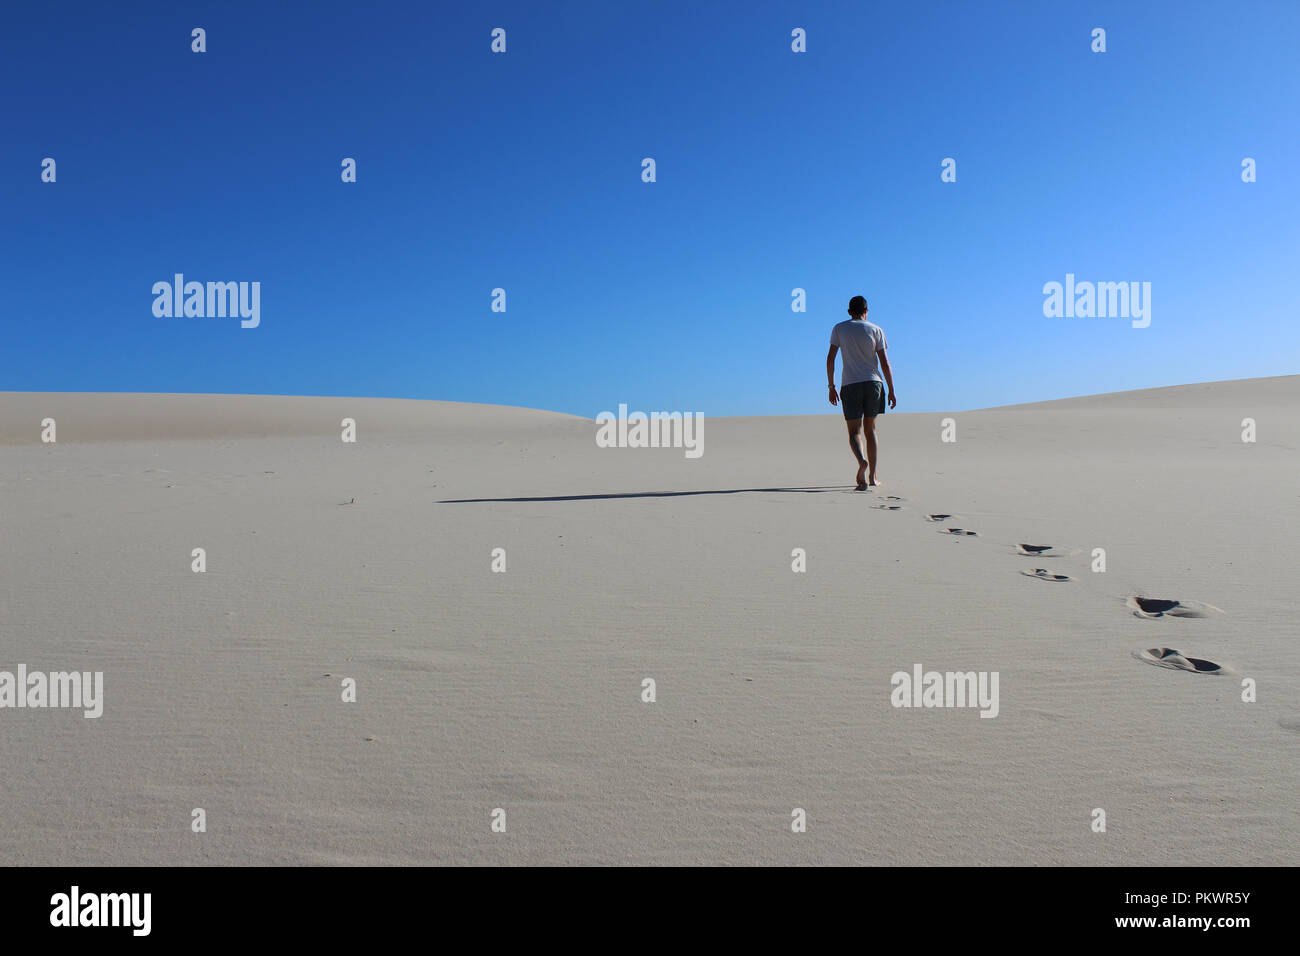 Homme sous le soleil brûlant dans un ciel bleu clair marchant sur une dune de sable blanc laissant ses empreintes dans le sable Banque D'Images